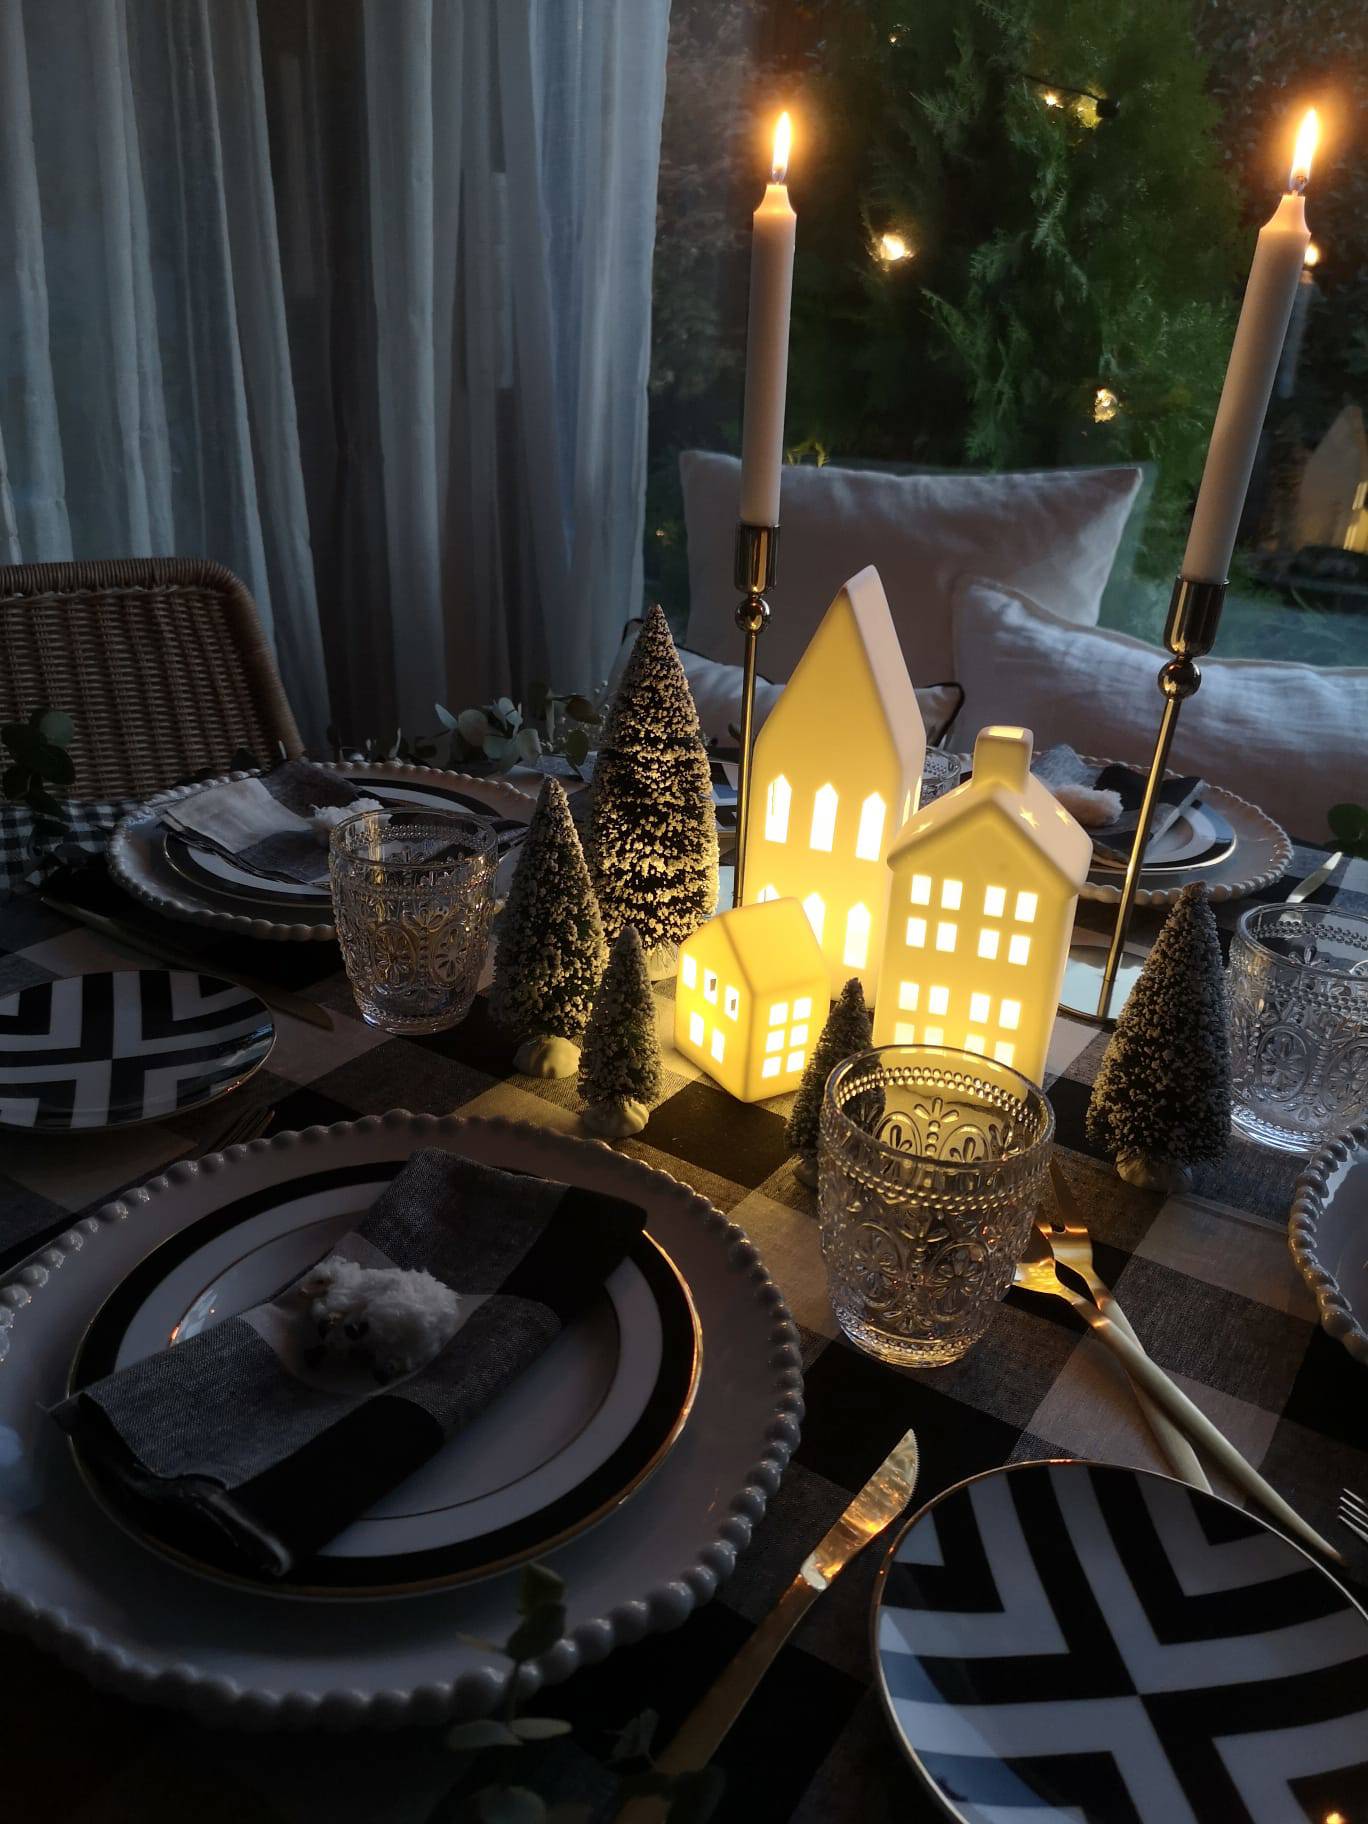 Comedor con mesa navideña con lámpara de mesa de IKEA, velas y arbolitos decorativos.